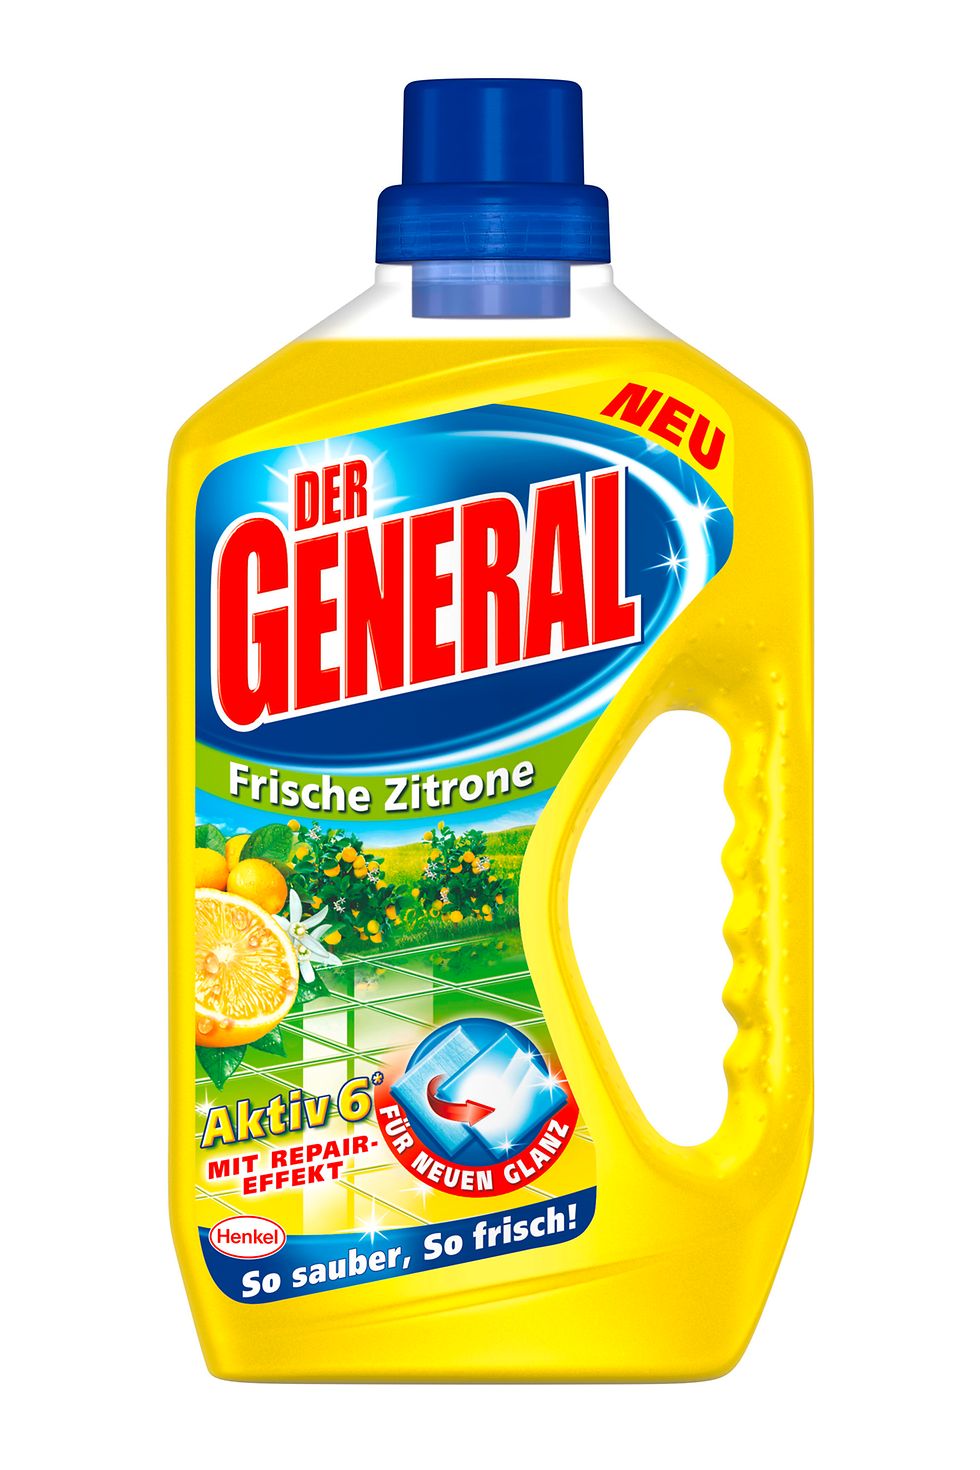 Der General Aktiv 6 Frische Zitrone